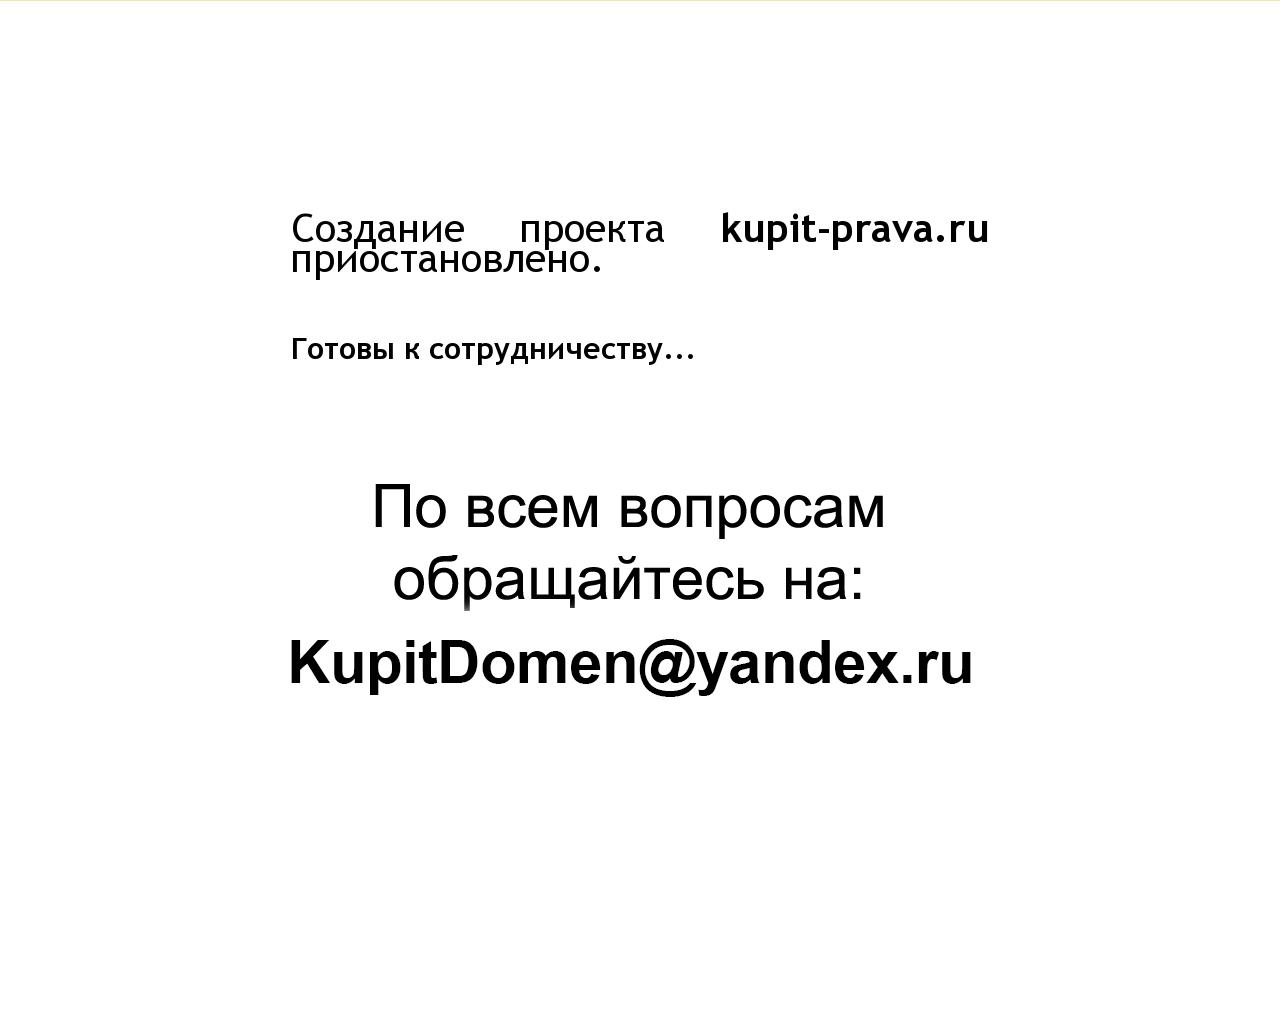 Изображение сайта kupit-prava.ru в разрешении 1280x1024